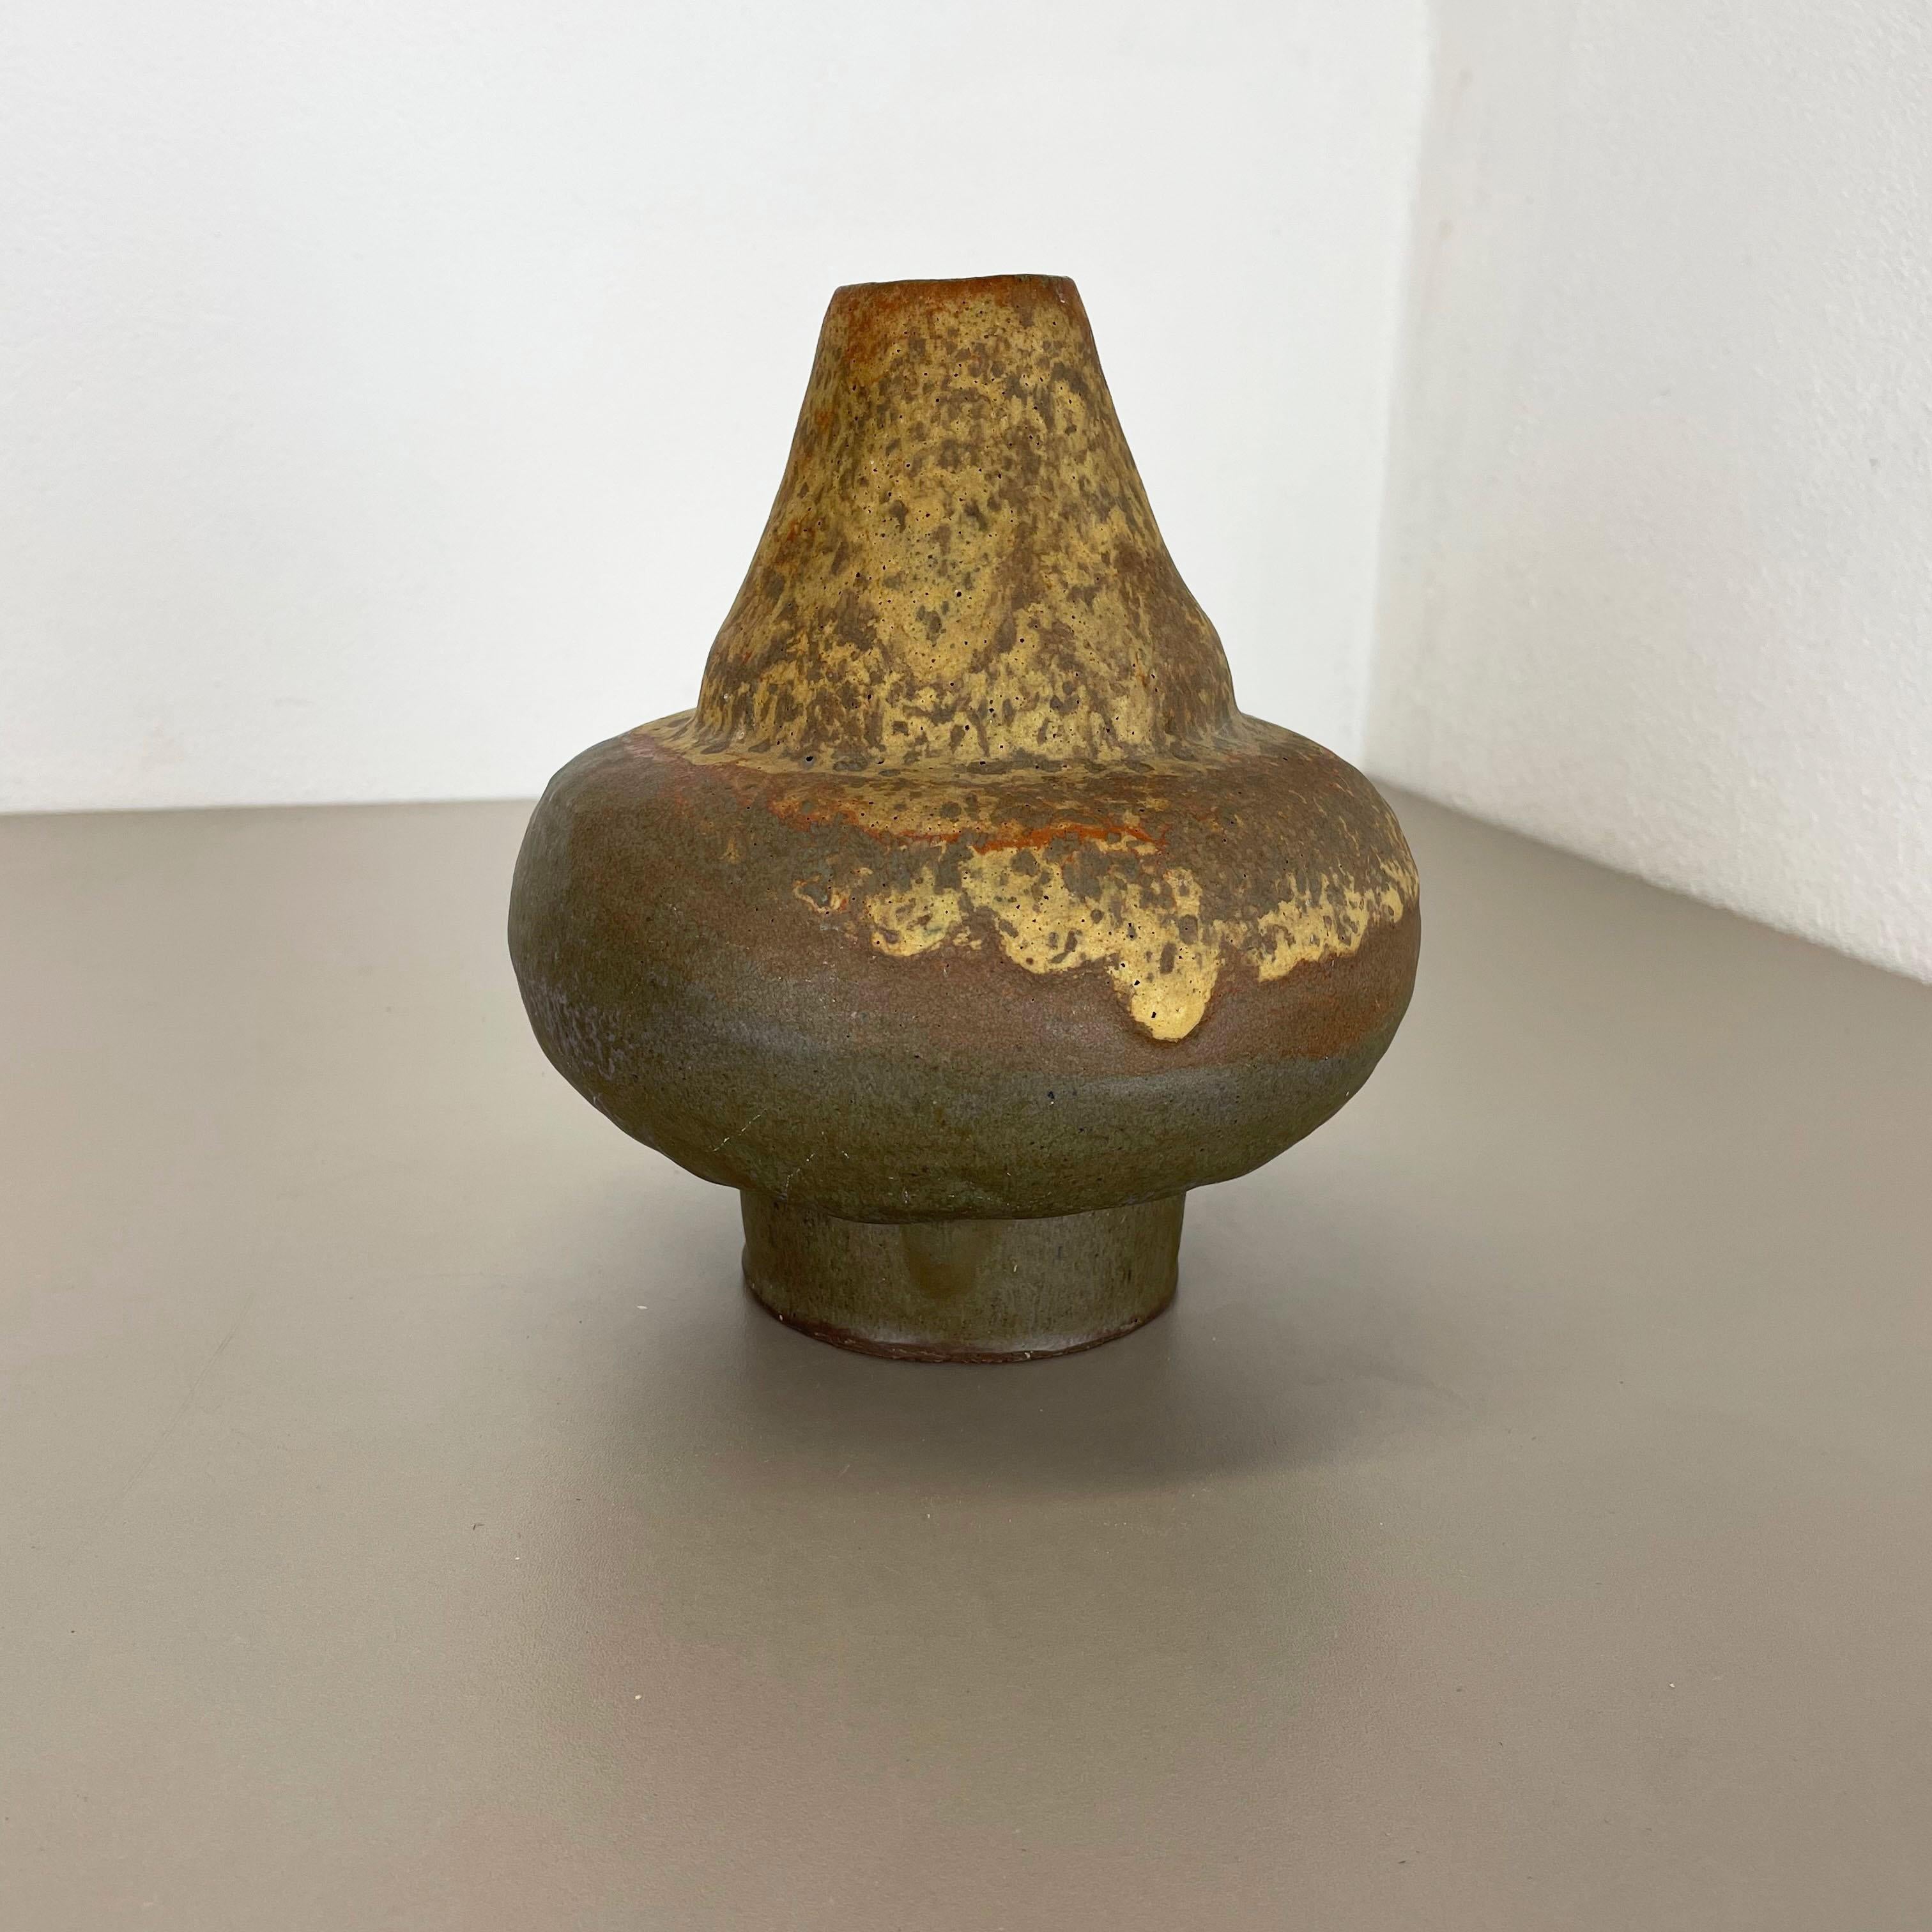 Article :

Vase d'art en lave grasse


Modèle : 816-1


Producteur :

Ruscha, Allemagne



Décennie :

1970s




Ce vase vintage original a été produit dans les années 1970 en Allemagne. Il est réalisé en poterie céramique en